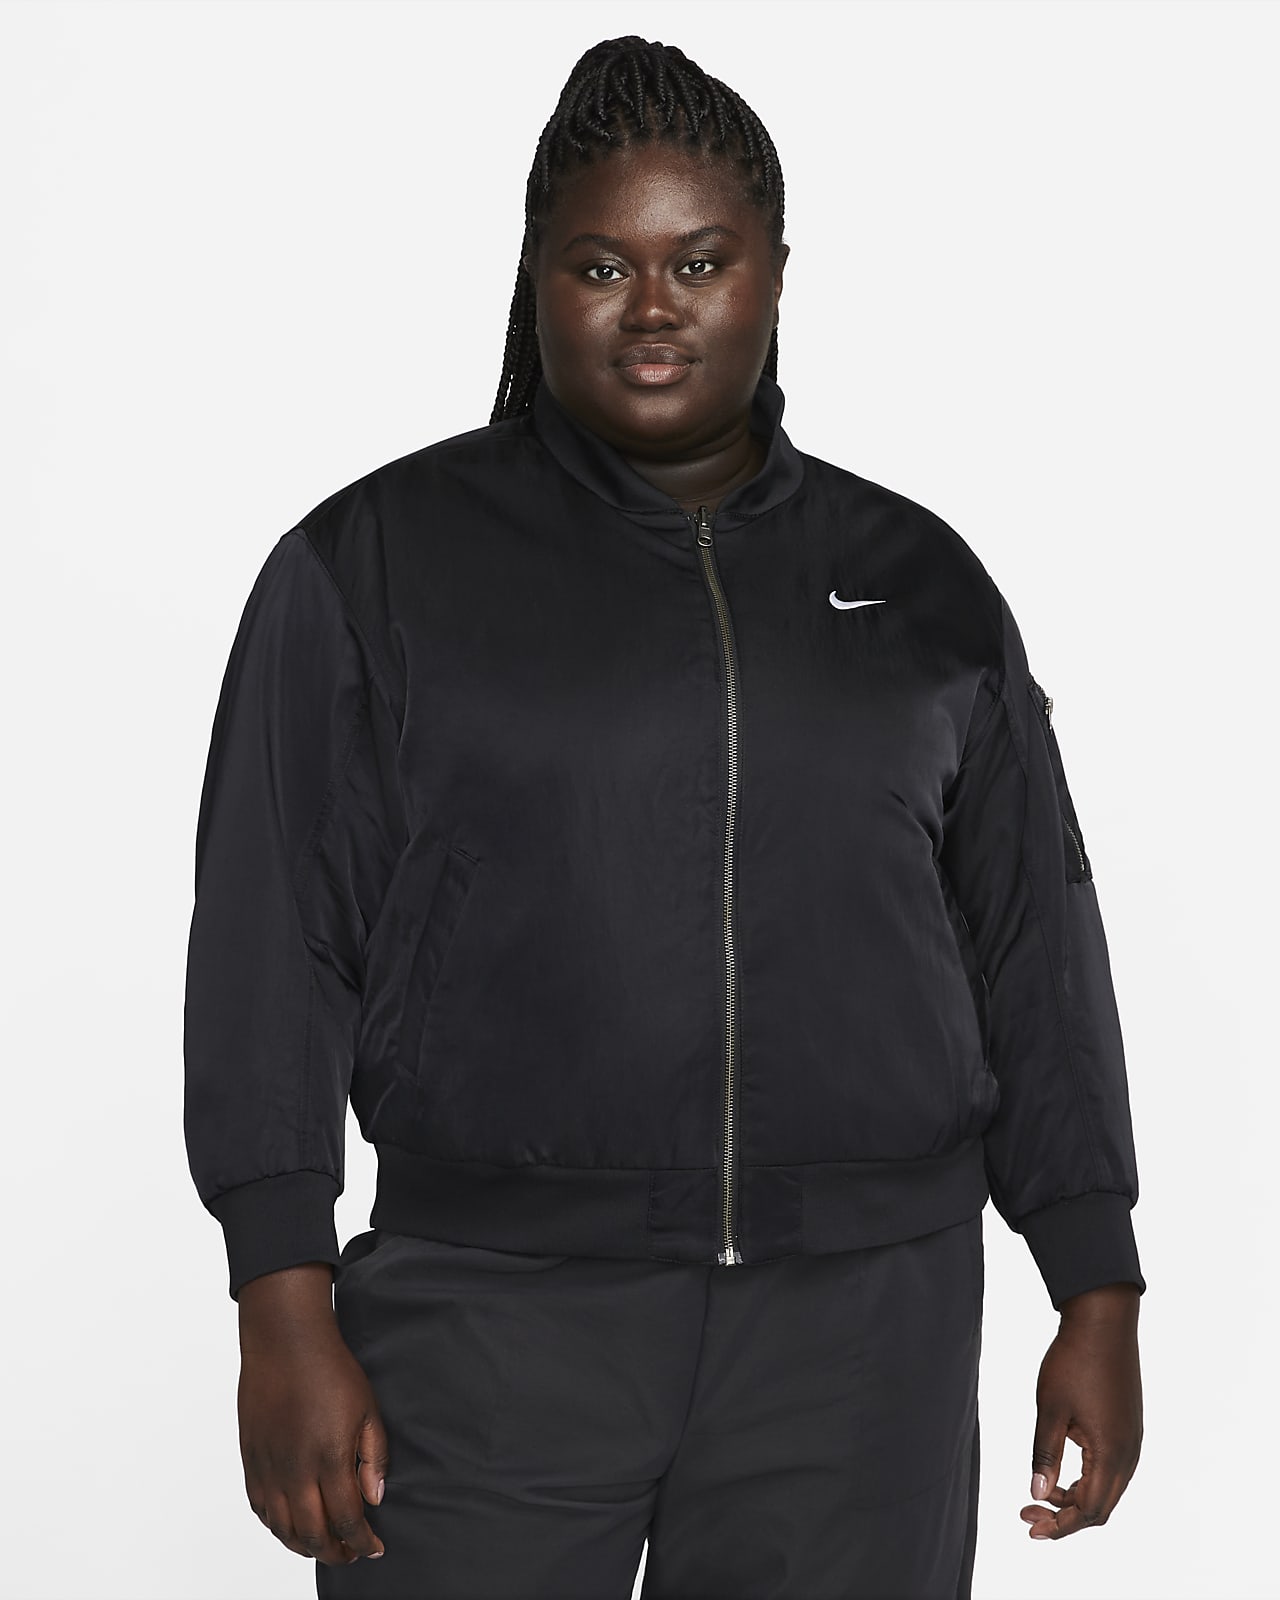 Nike Womens Padded Jacket - Black | Life Style Sports UK